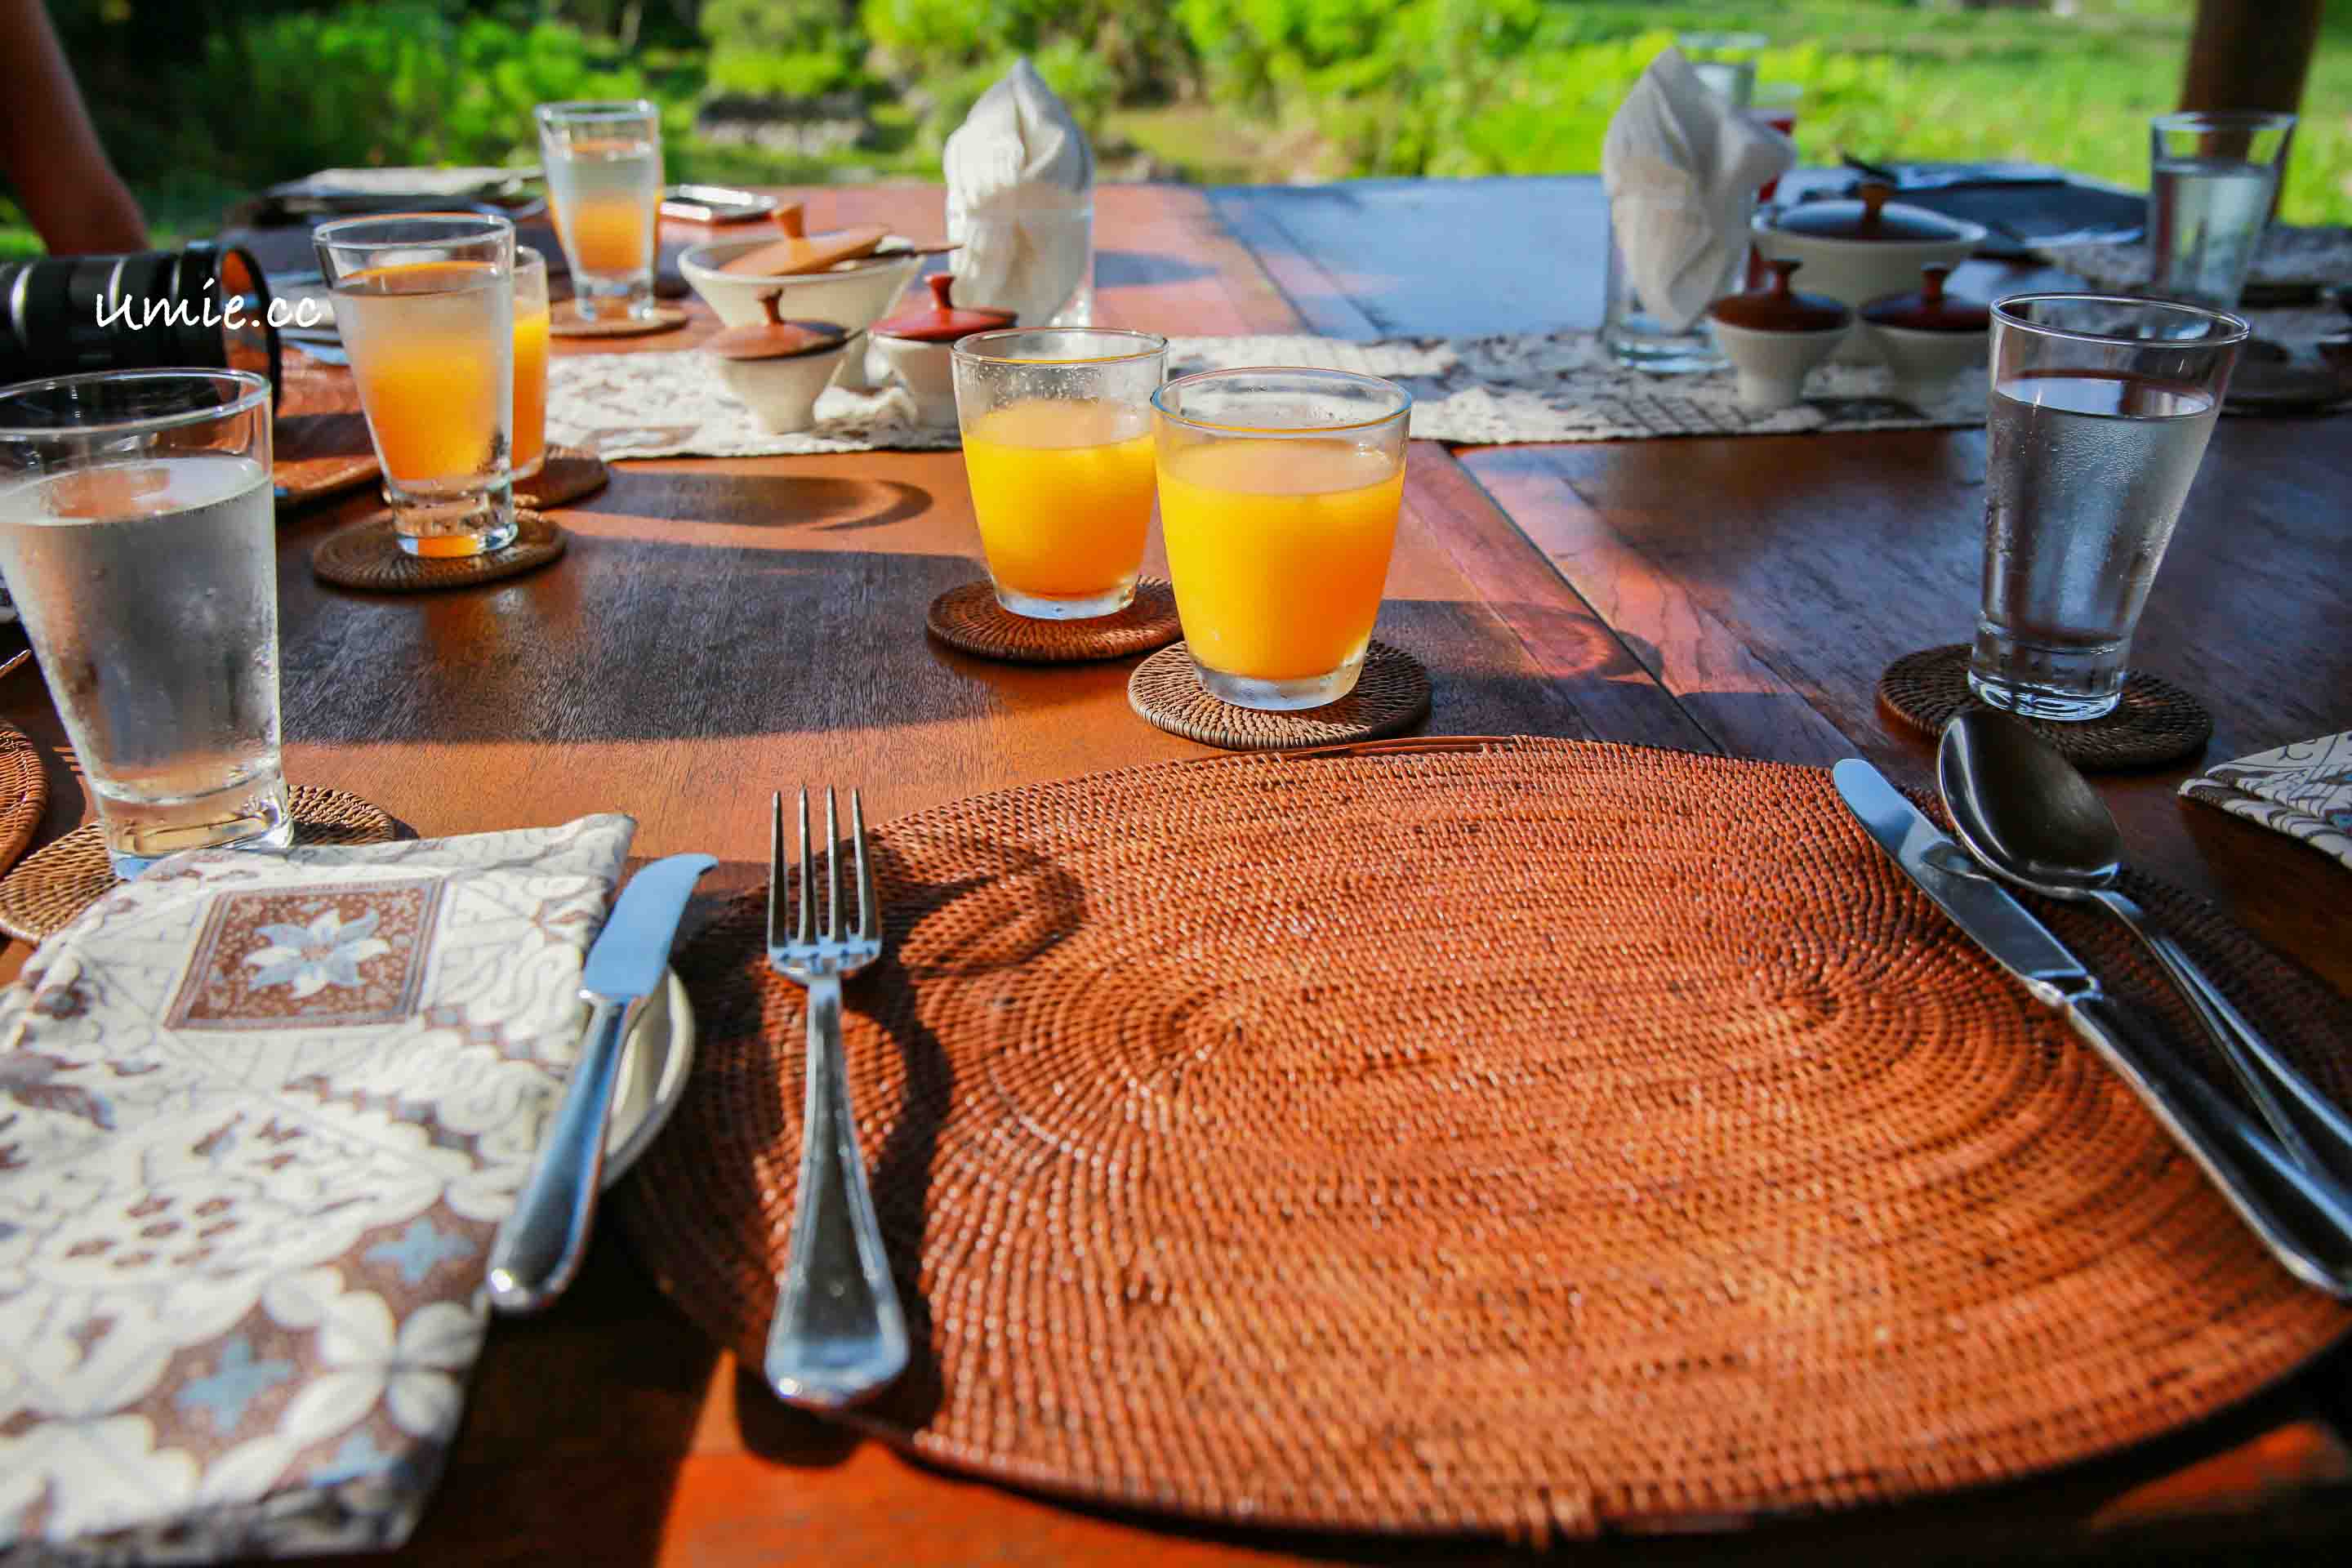 峇里島|巴里島行程推薦-阿里拉曼格斯渡假村Alila Manggis 迷人的大自然戶外早餐